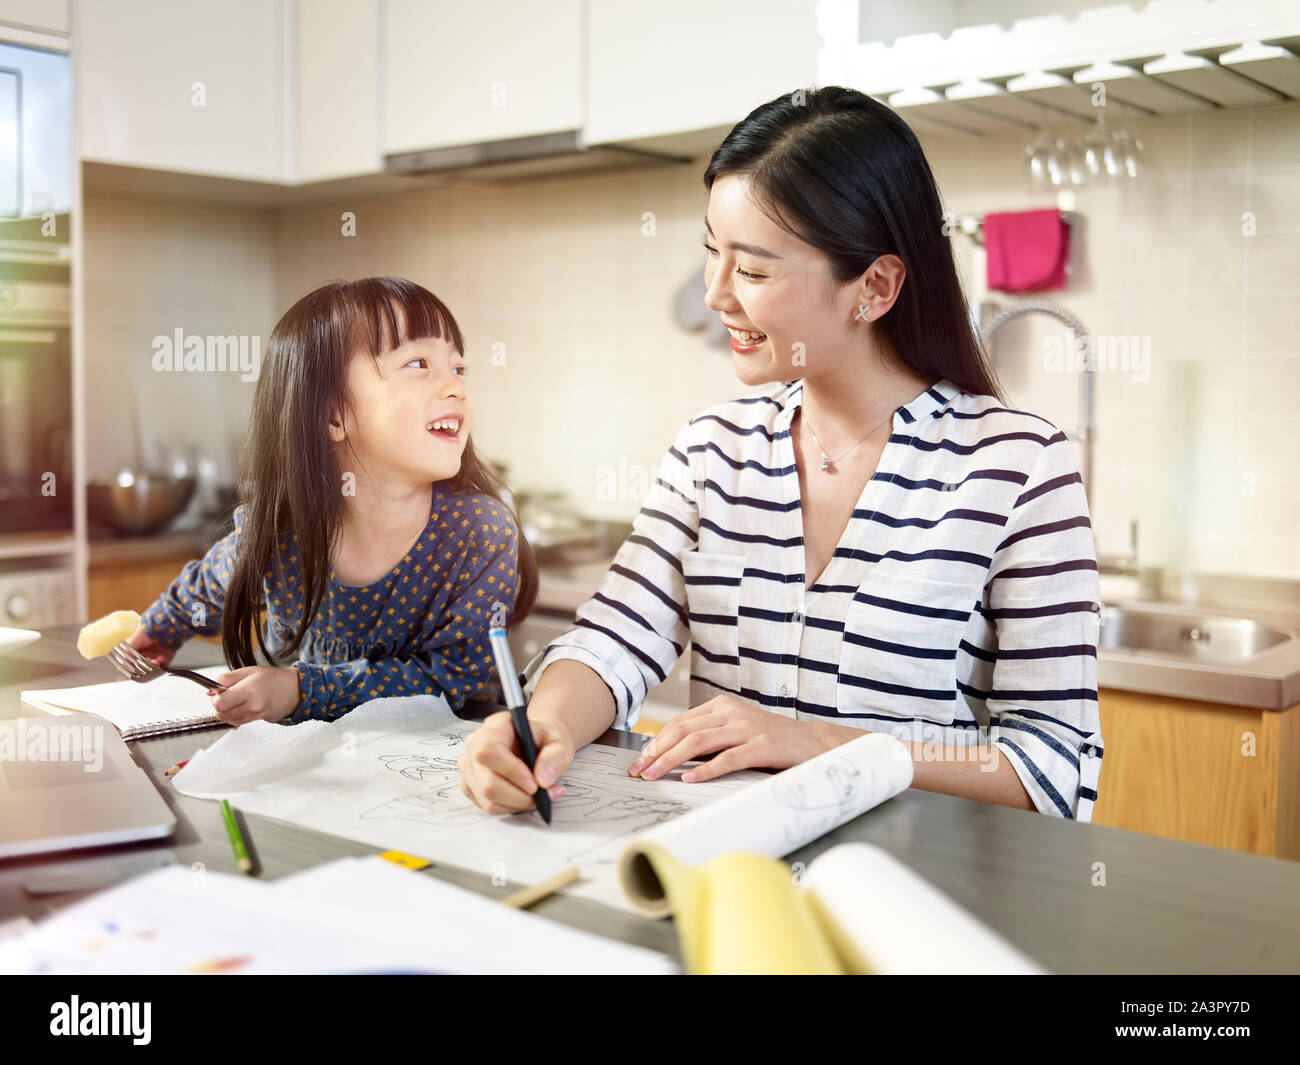 Les jeunes professionnels du design asiatique mère travaille à la maison tout en prenant soin de sa fille. Banque D'Images